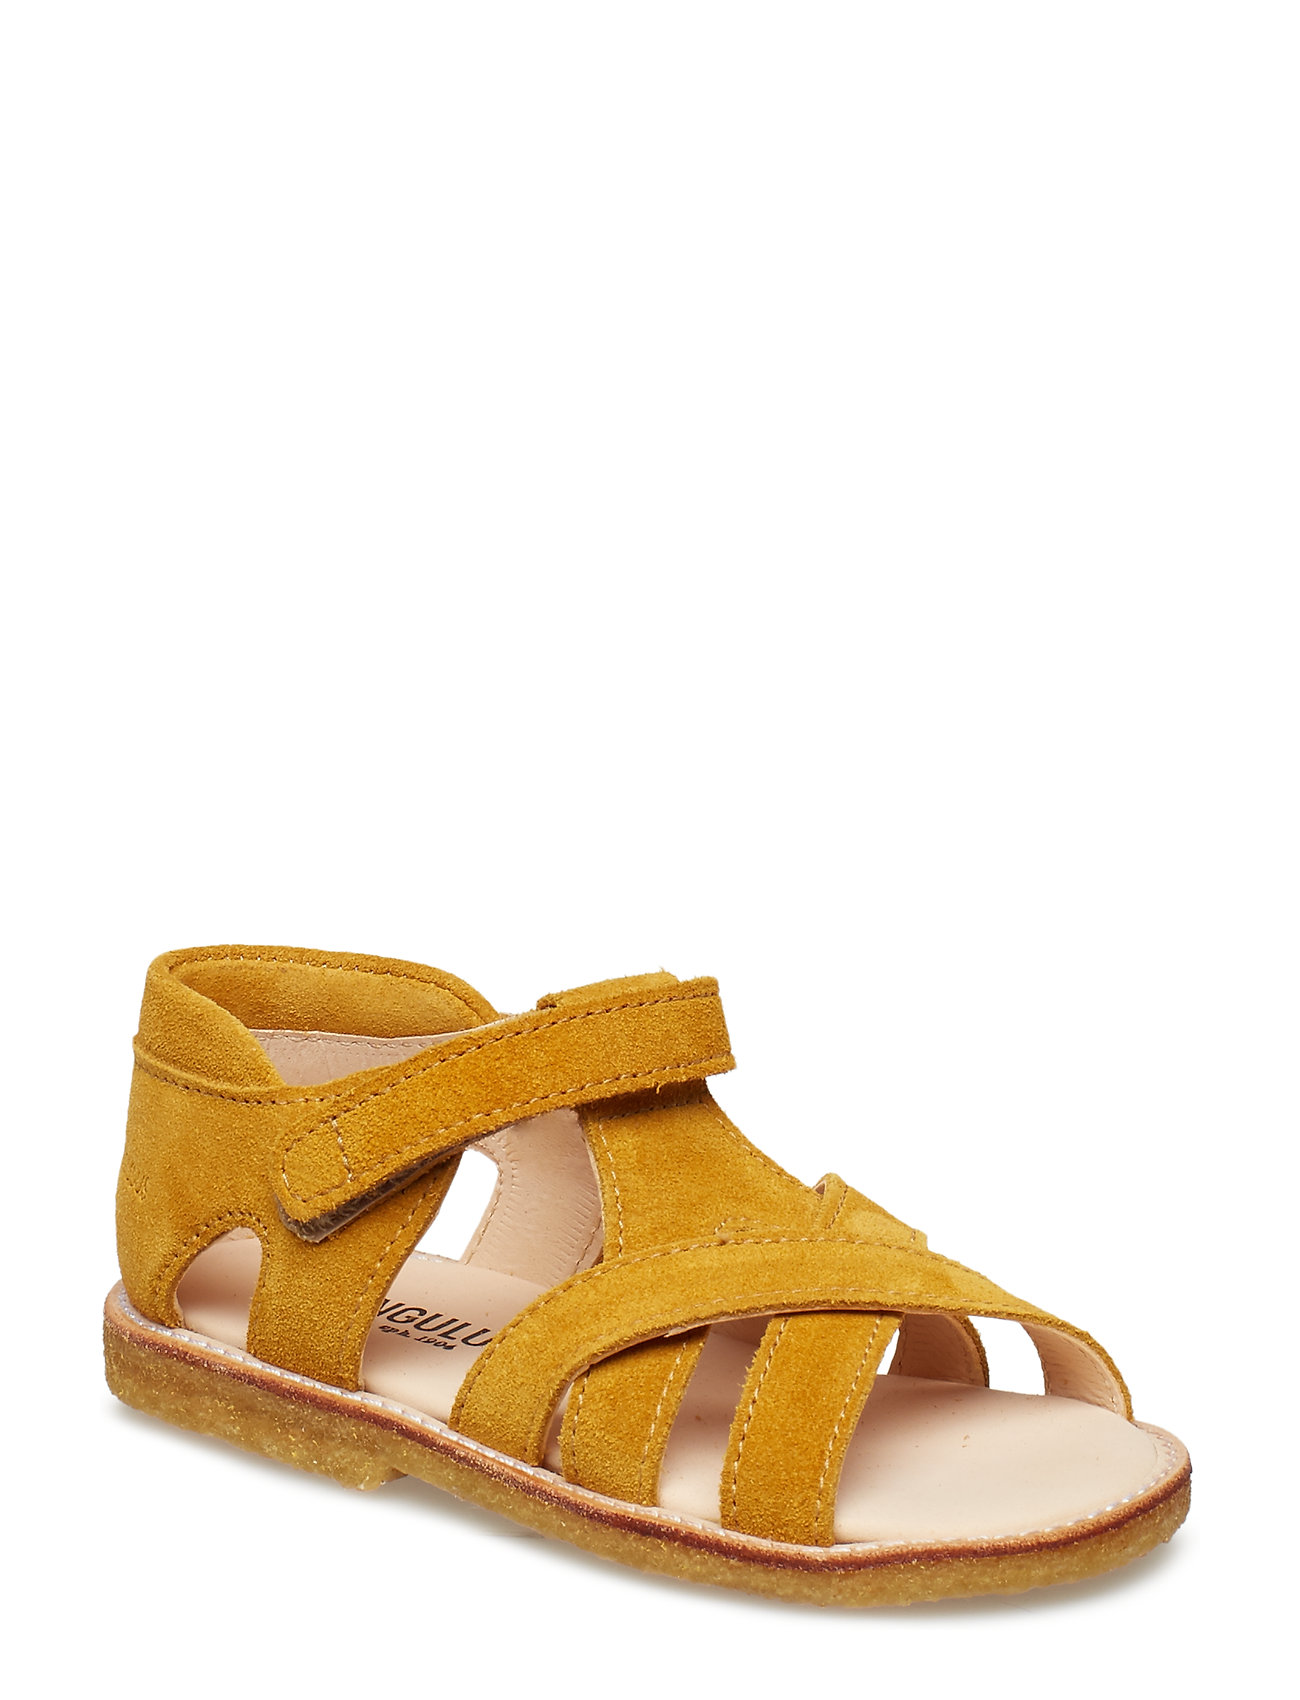 Sandals - Flat - Open Toe - Clo Shoes Summer Shoes Sandals Keltainen ANGULUS